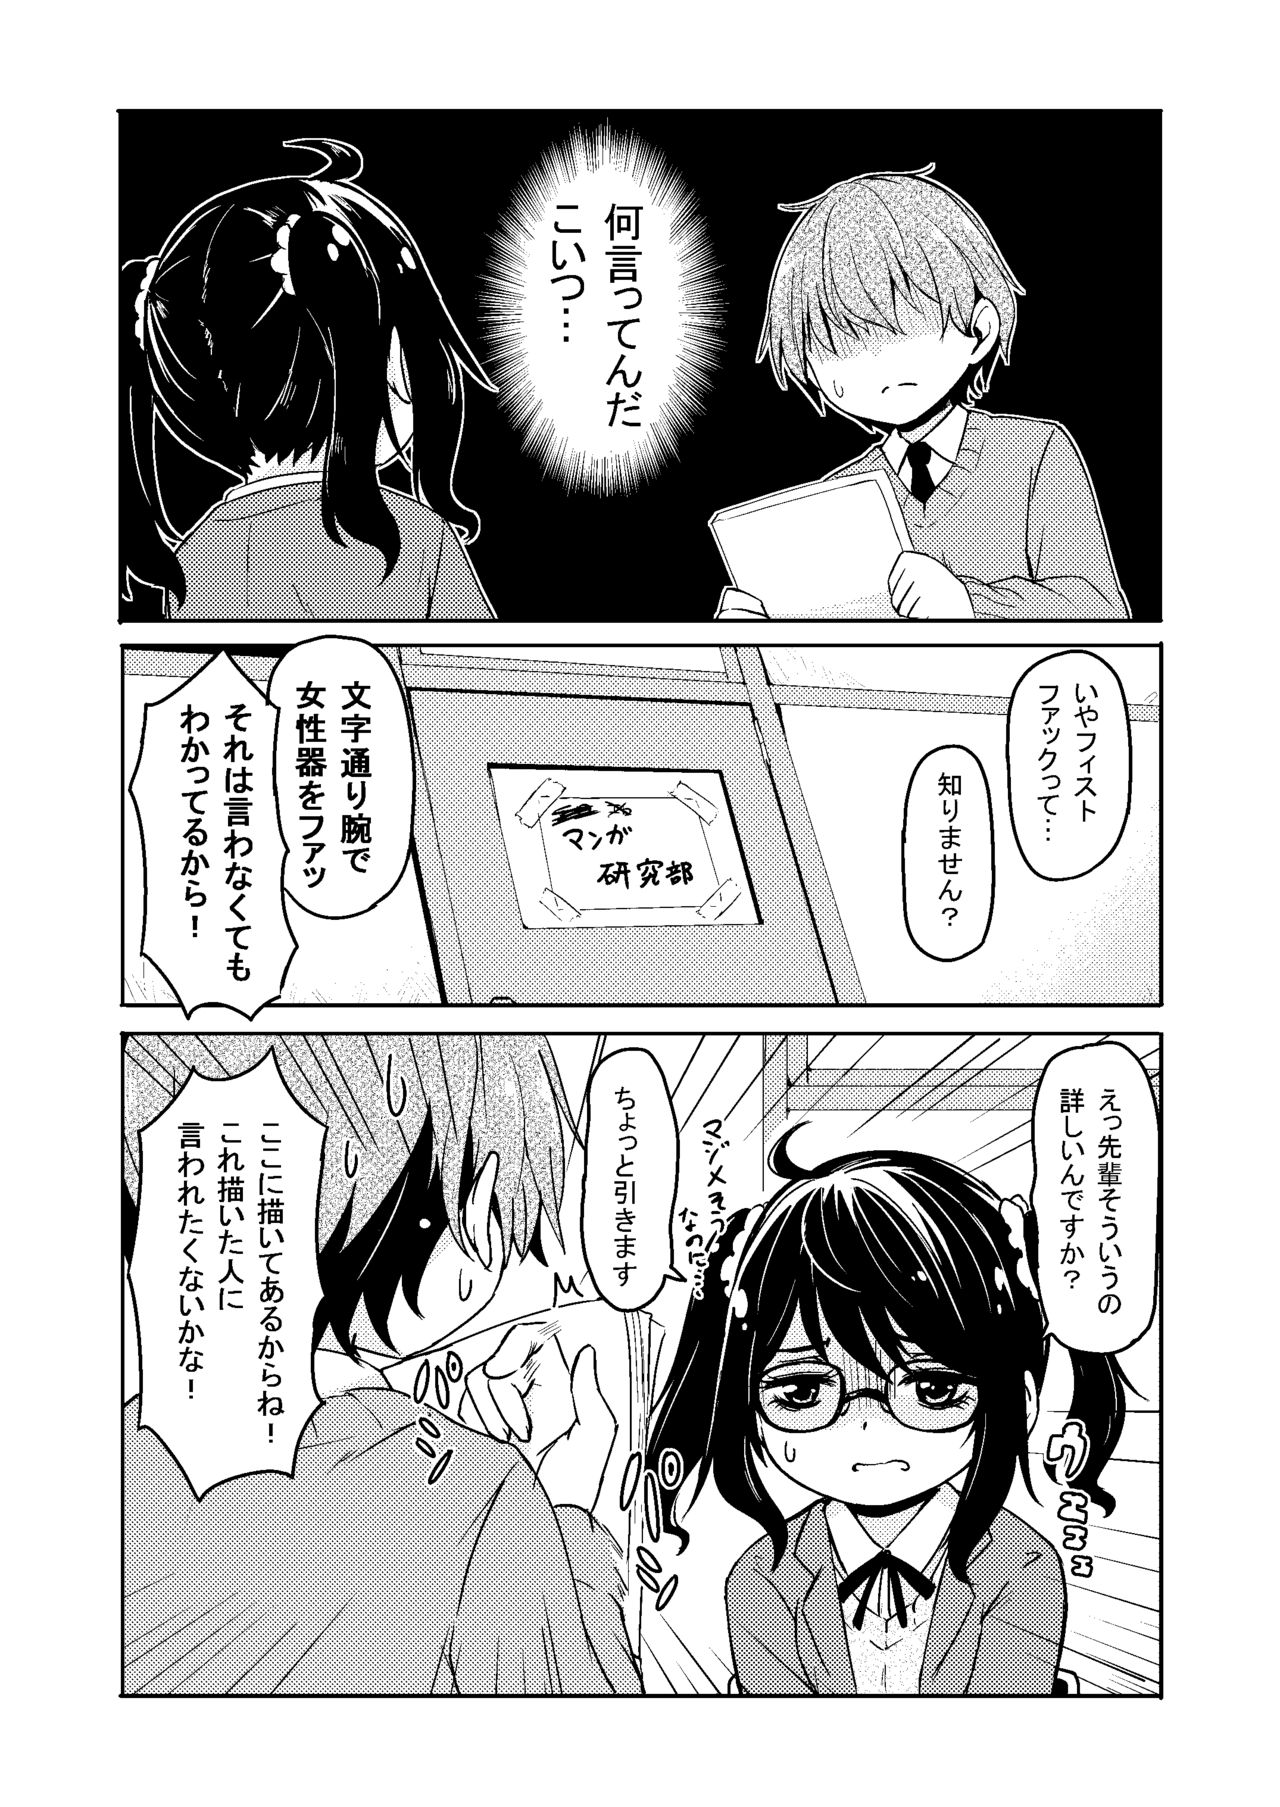 [Katayude Tamago (445)] Don't scare be born + Botsu tta manga desu. [Digital] page 29 full